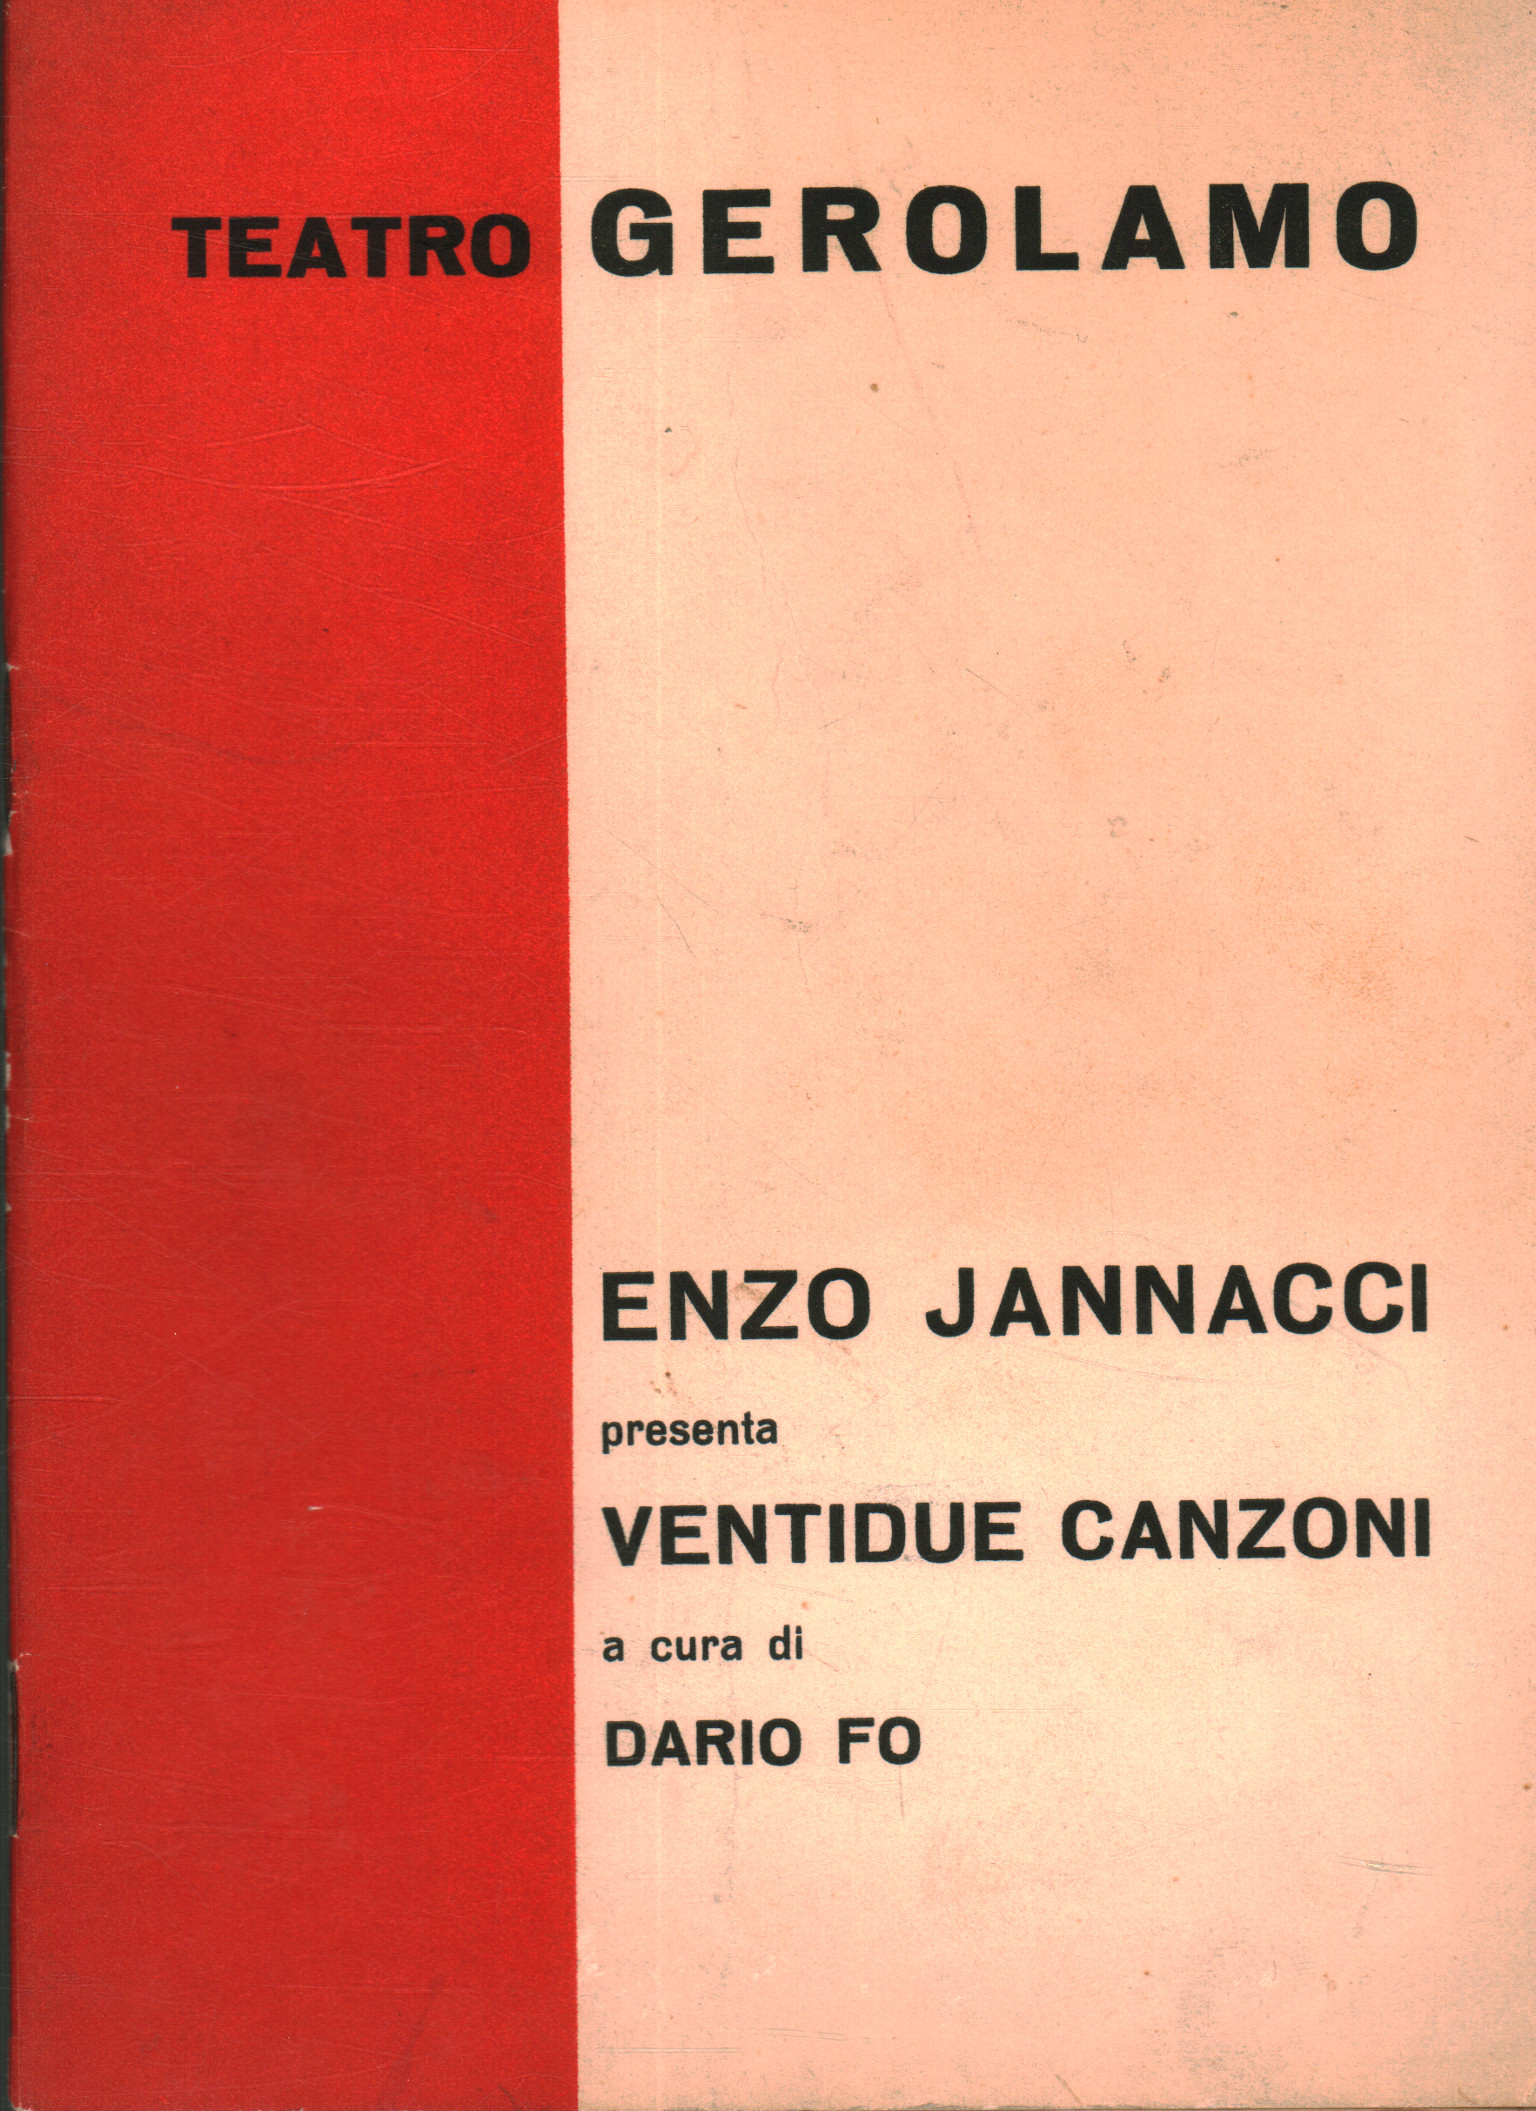 Twenty-two songs, Enzo Jannacci